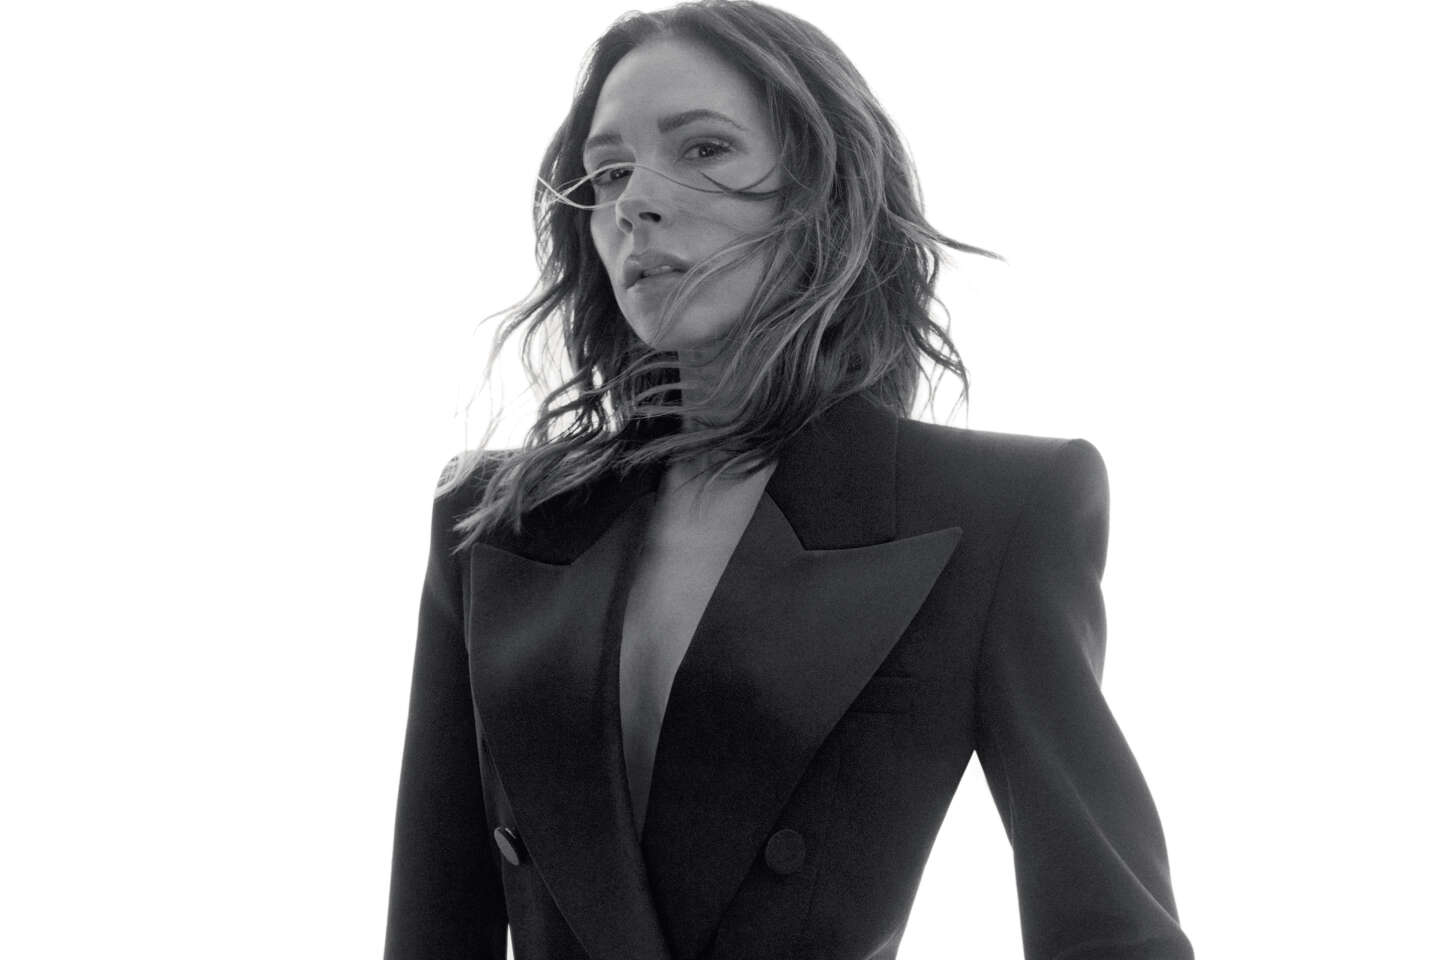 Cantante pop, mujer de futbolista, diseñadora de moda… La metamorfosis de Victoria Beckham